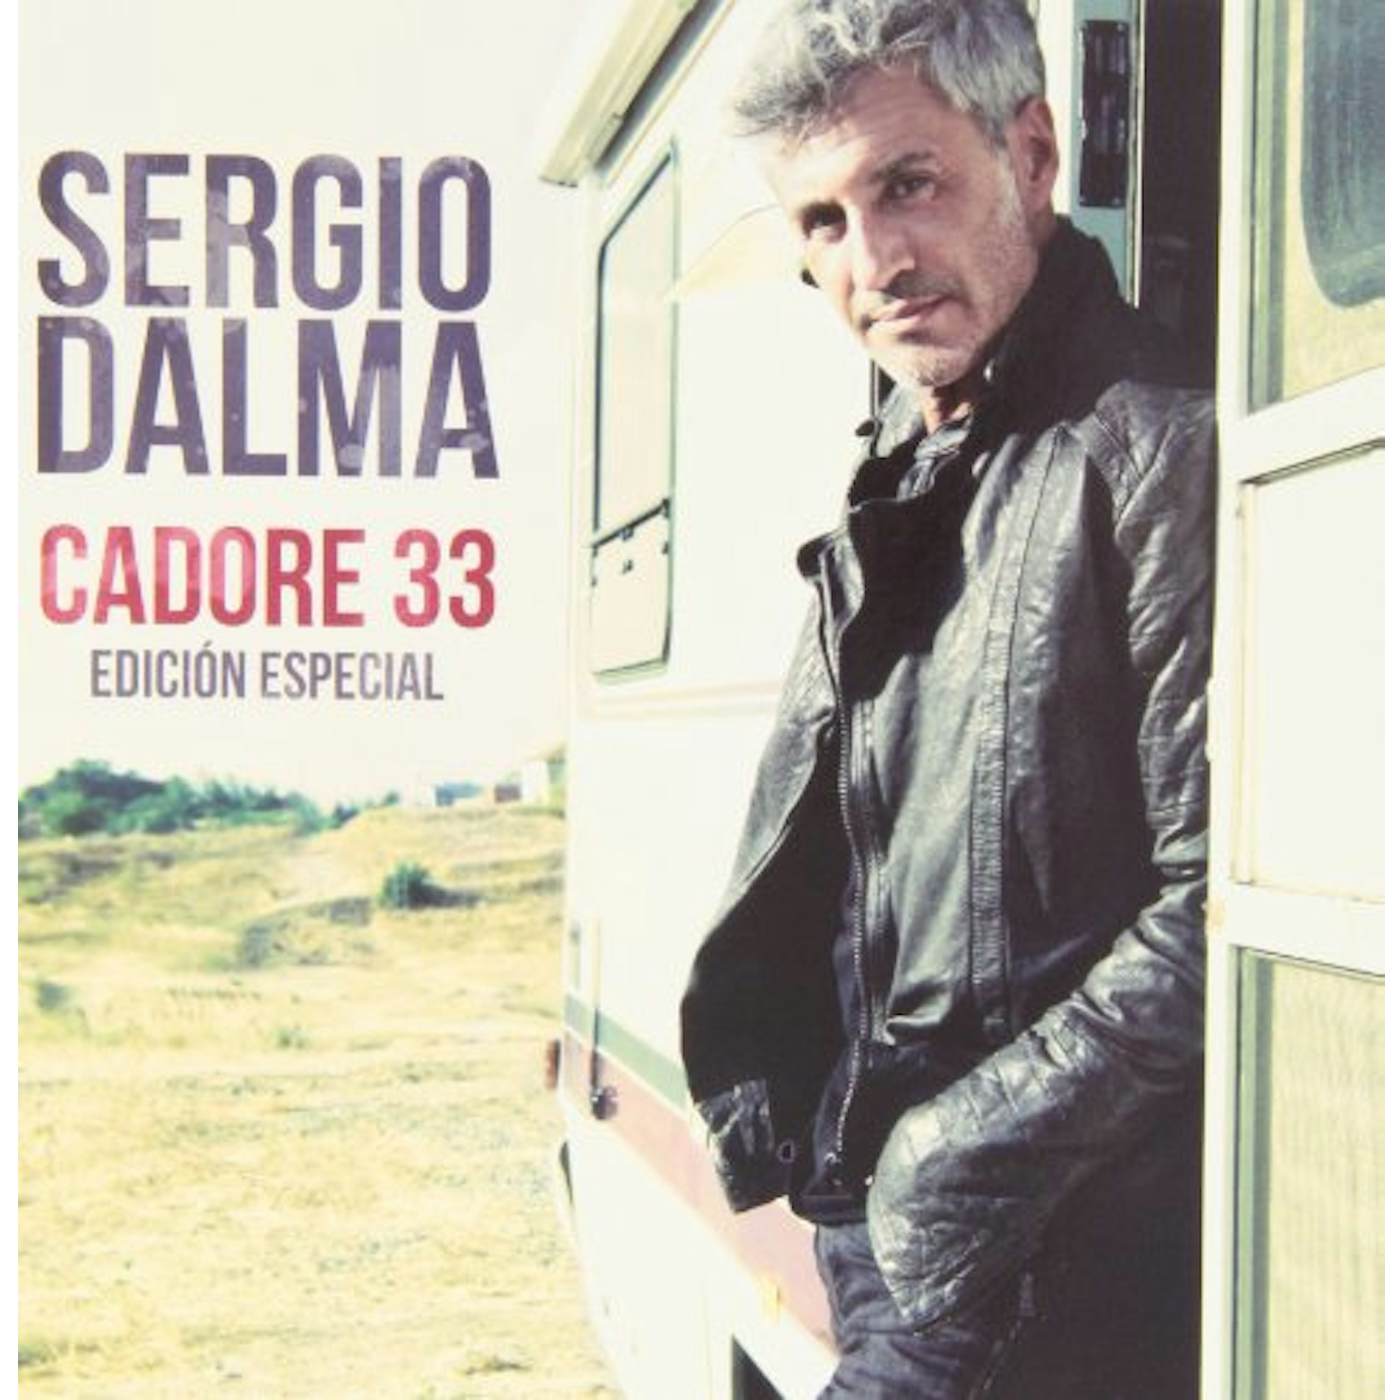 Sergio Dalma CADORE 33 EDICION ESPECIAL CD